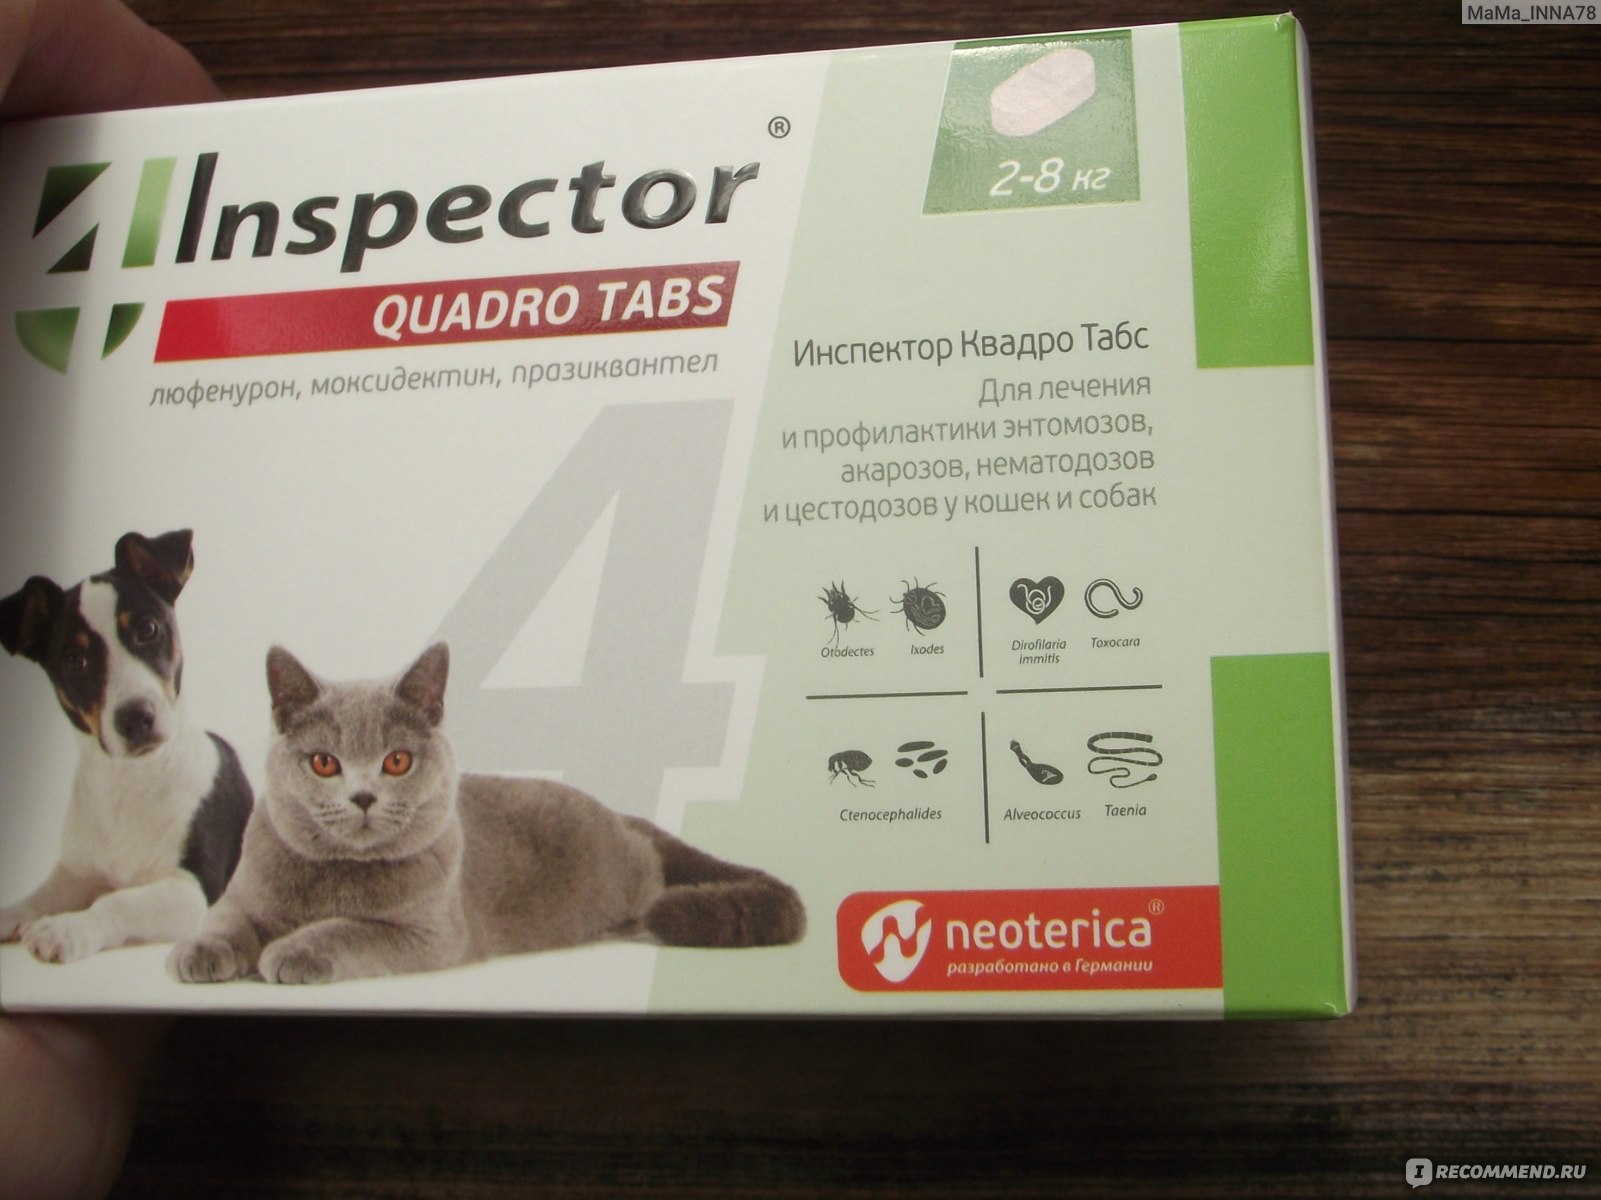 Inspector quadro tabs цены. Inspector Quadro таблетки от блох, клещей и глистов от 2-8 кг. Для кошек и собак. Инспектор Квадро таблетки для кошек. Инспектор Квадро для собак таблетки. Таблетки инспектор табс для кошек Квадро.